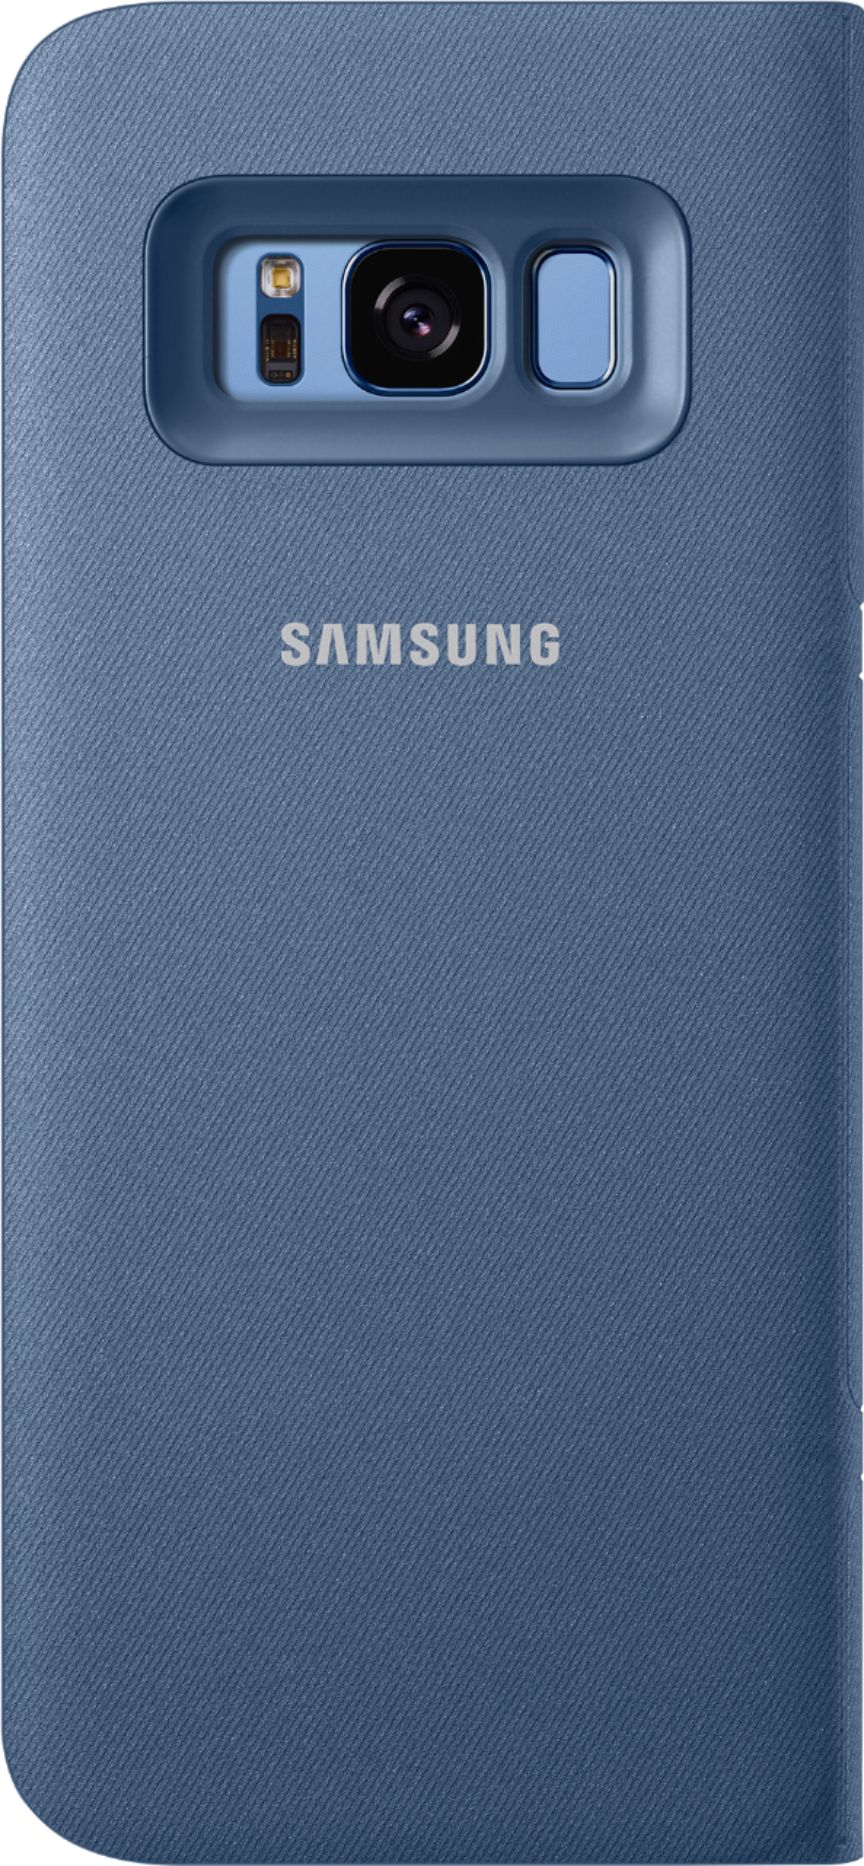 Begrænsninger sweater Oversigt LED Wallet Cover for Samsung Galaxy S8 Blue EF-NG950PLEGUS - Best Buy